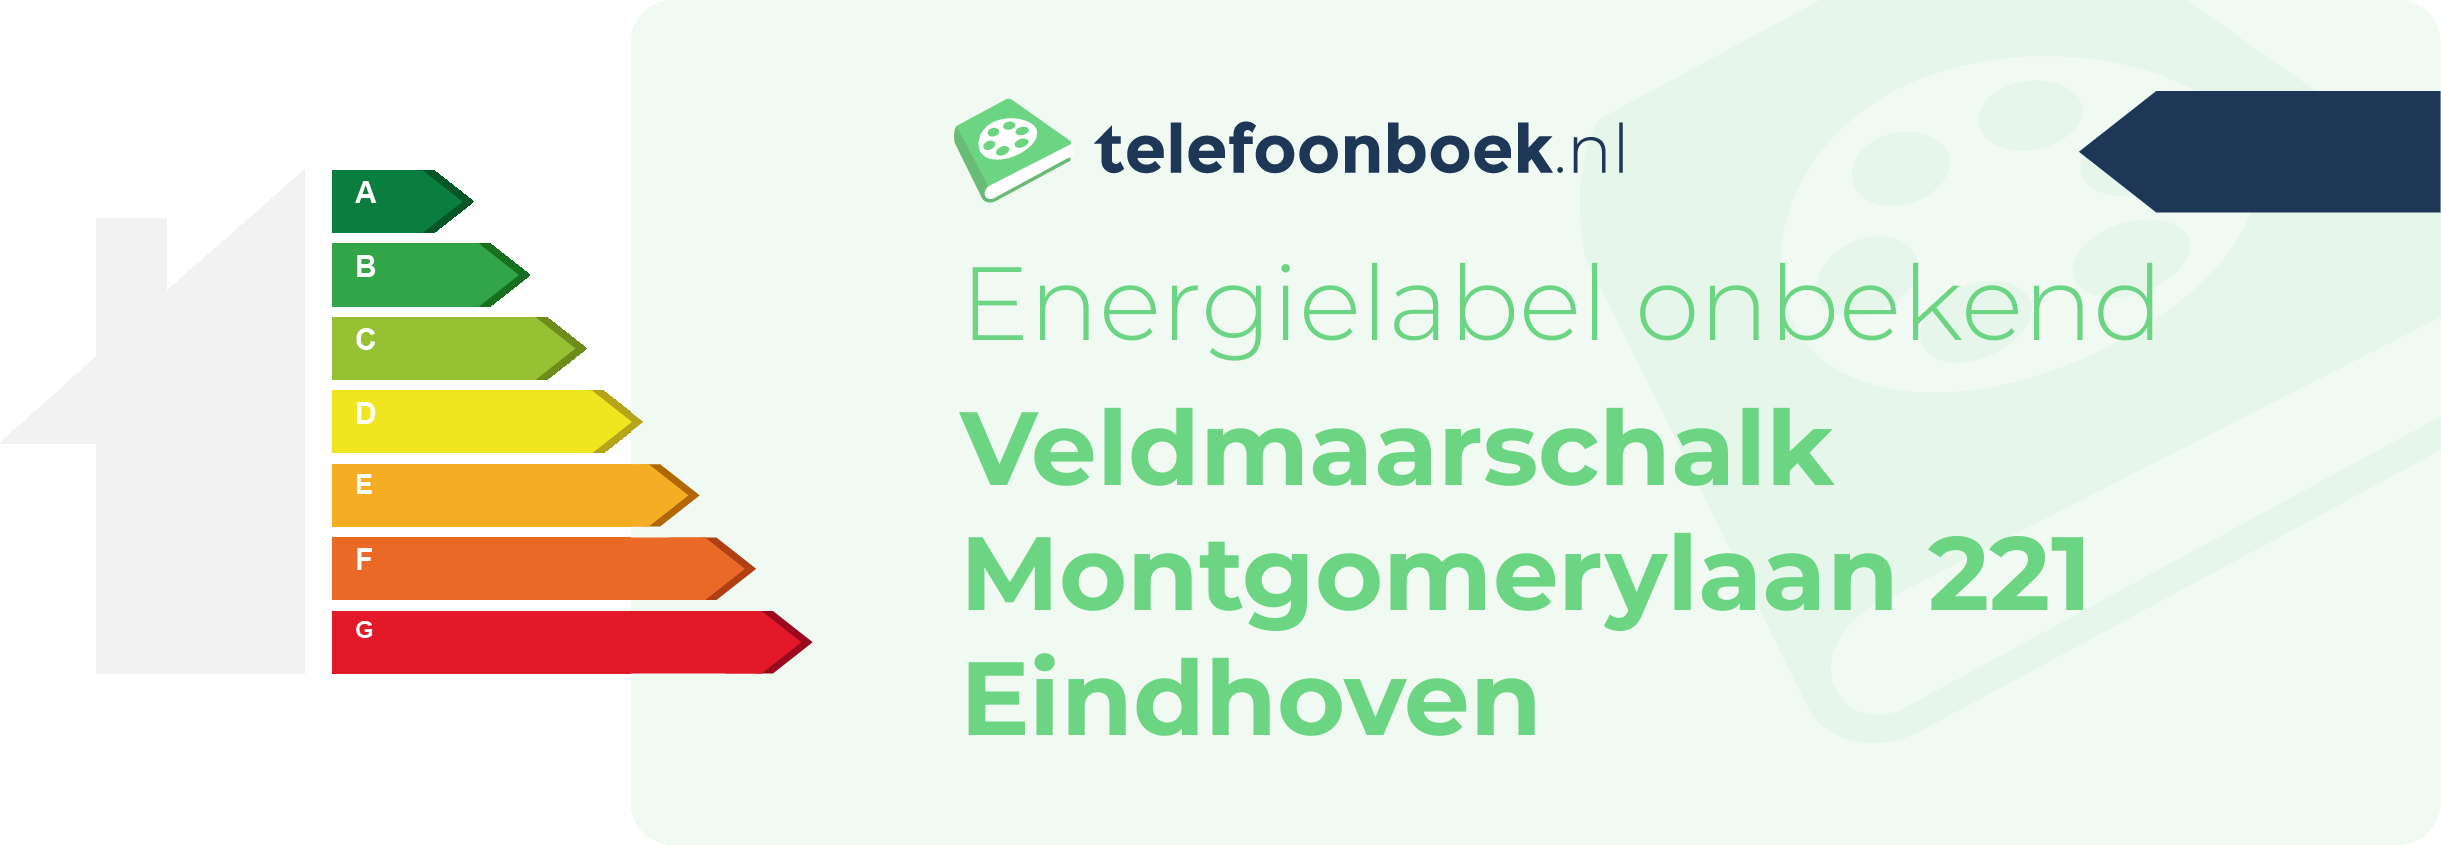 Energielabel Veldmaarschalk Montgomerylaan 221 Eindhoven